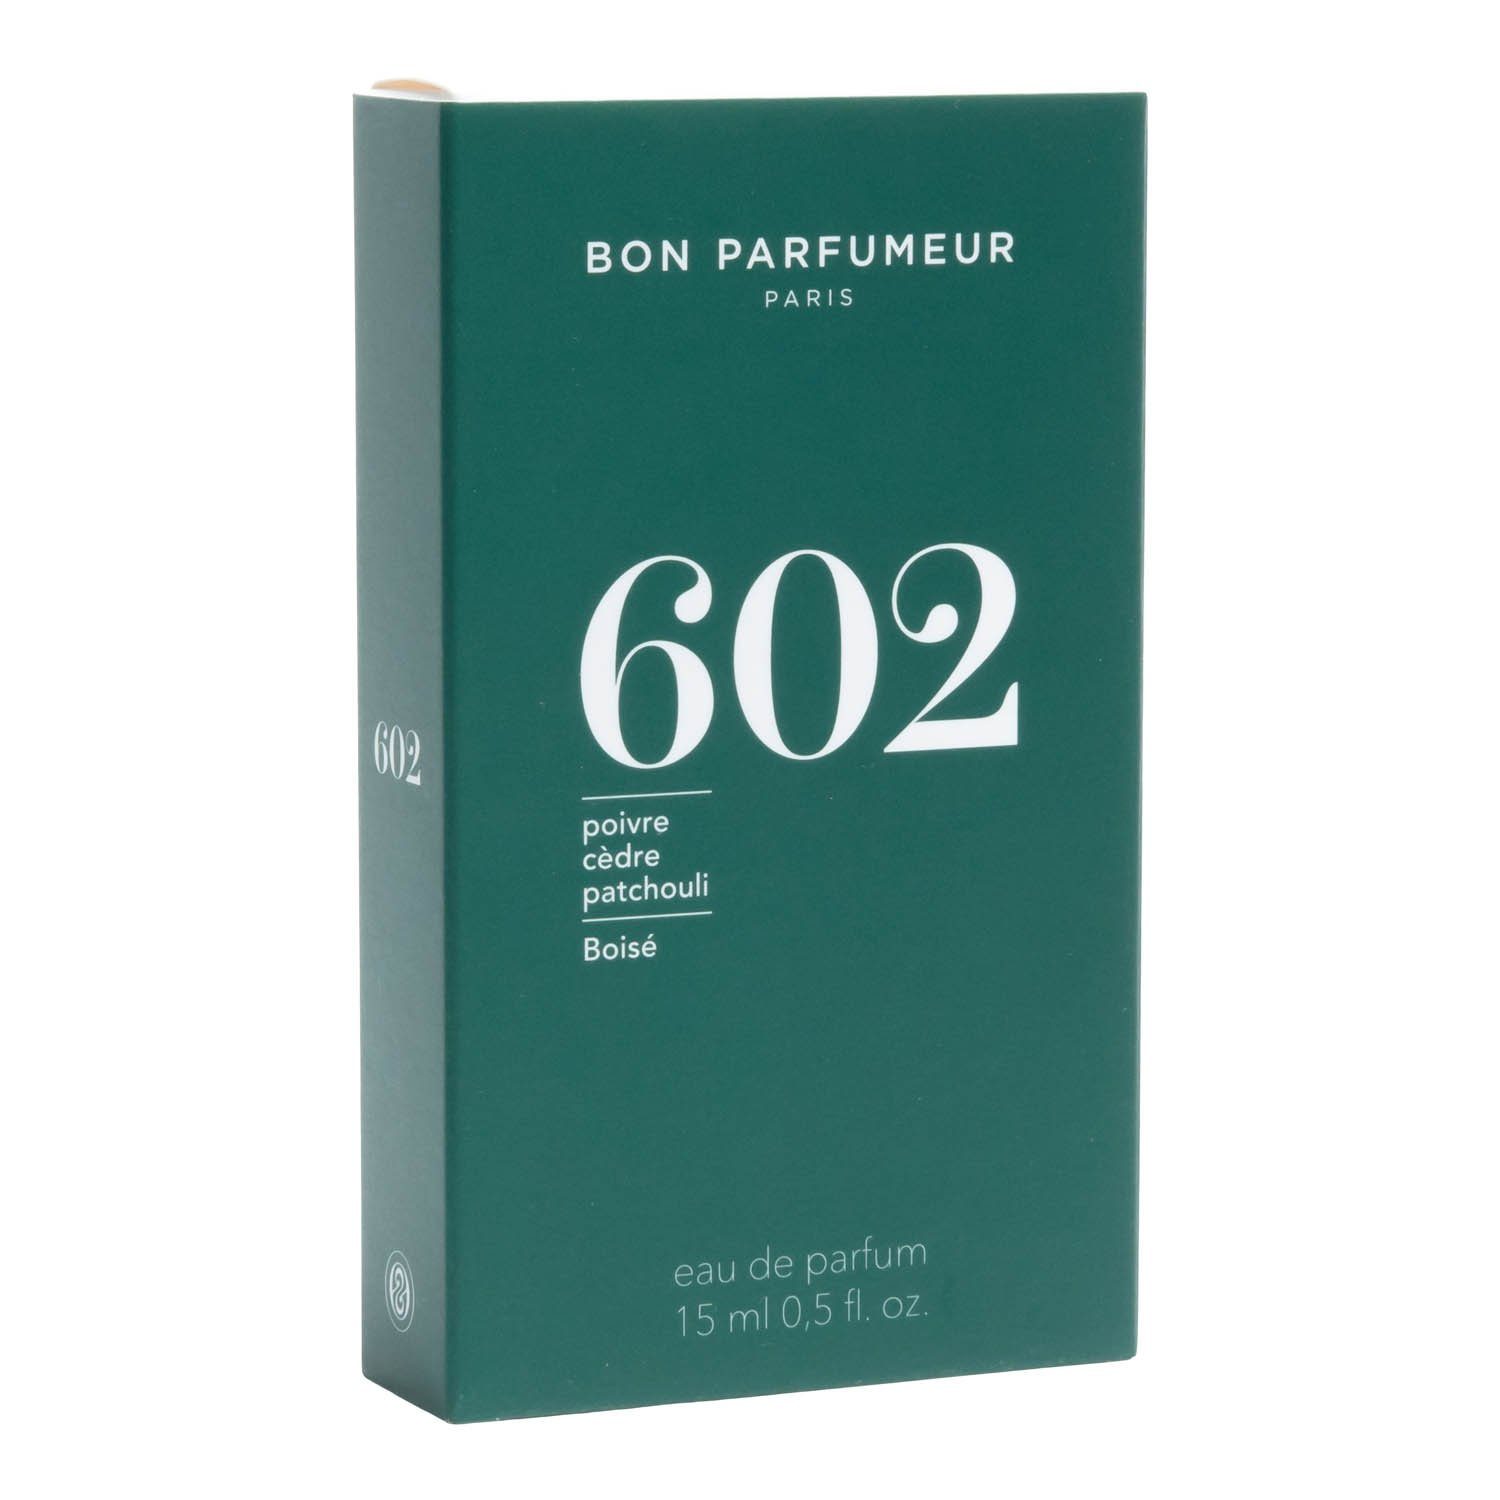 Bon Parfumeur Eau de Parfum 602 15 ml